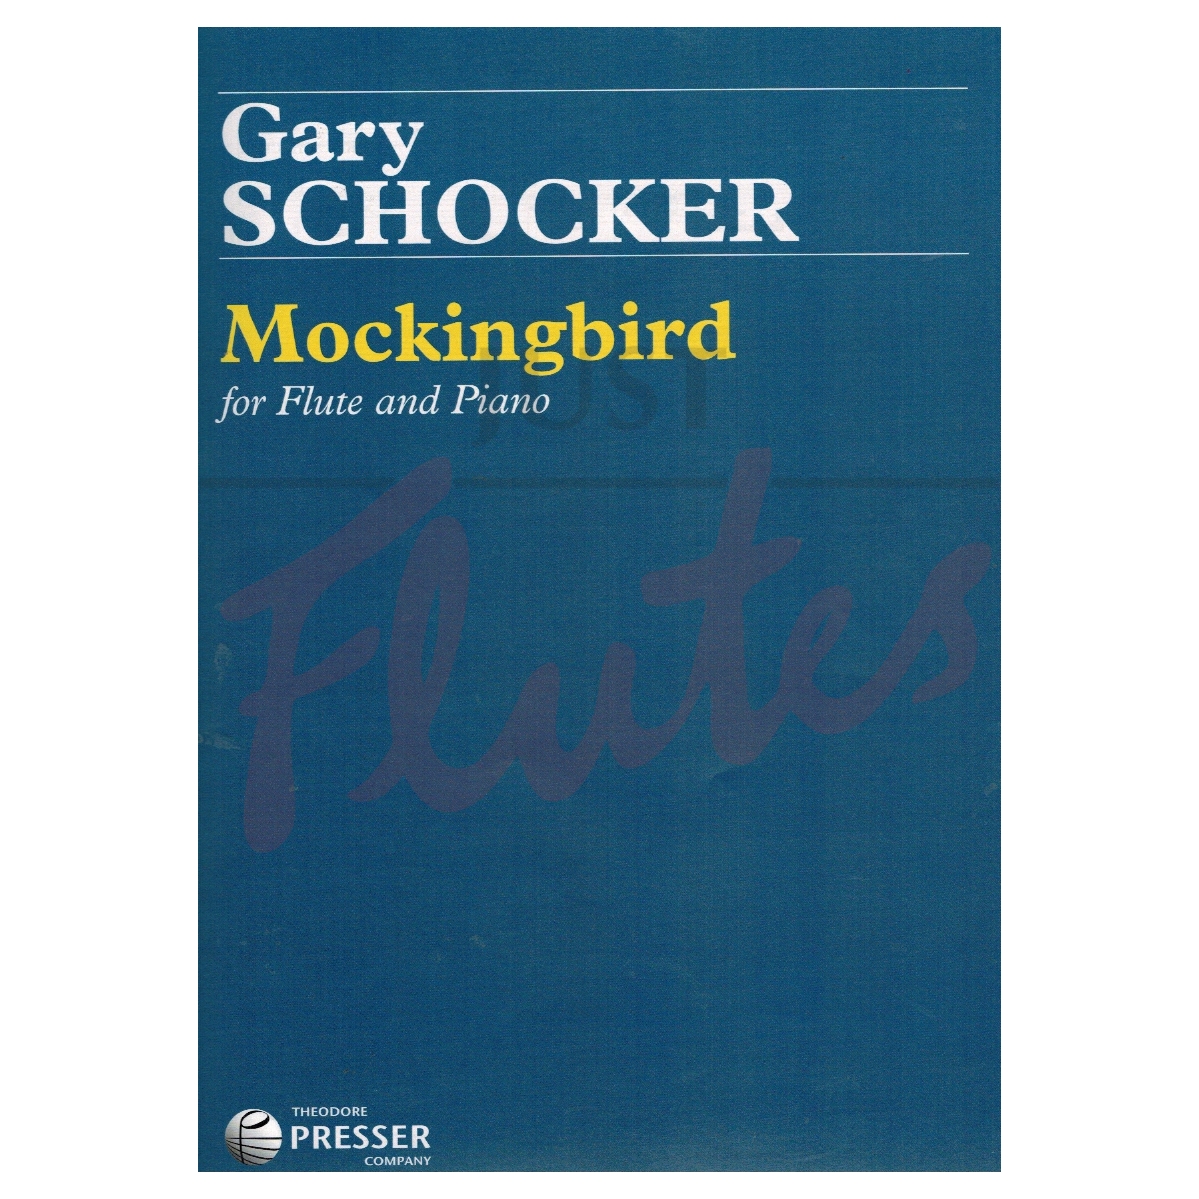 Mockingbird for Flute and Piano